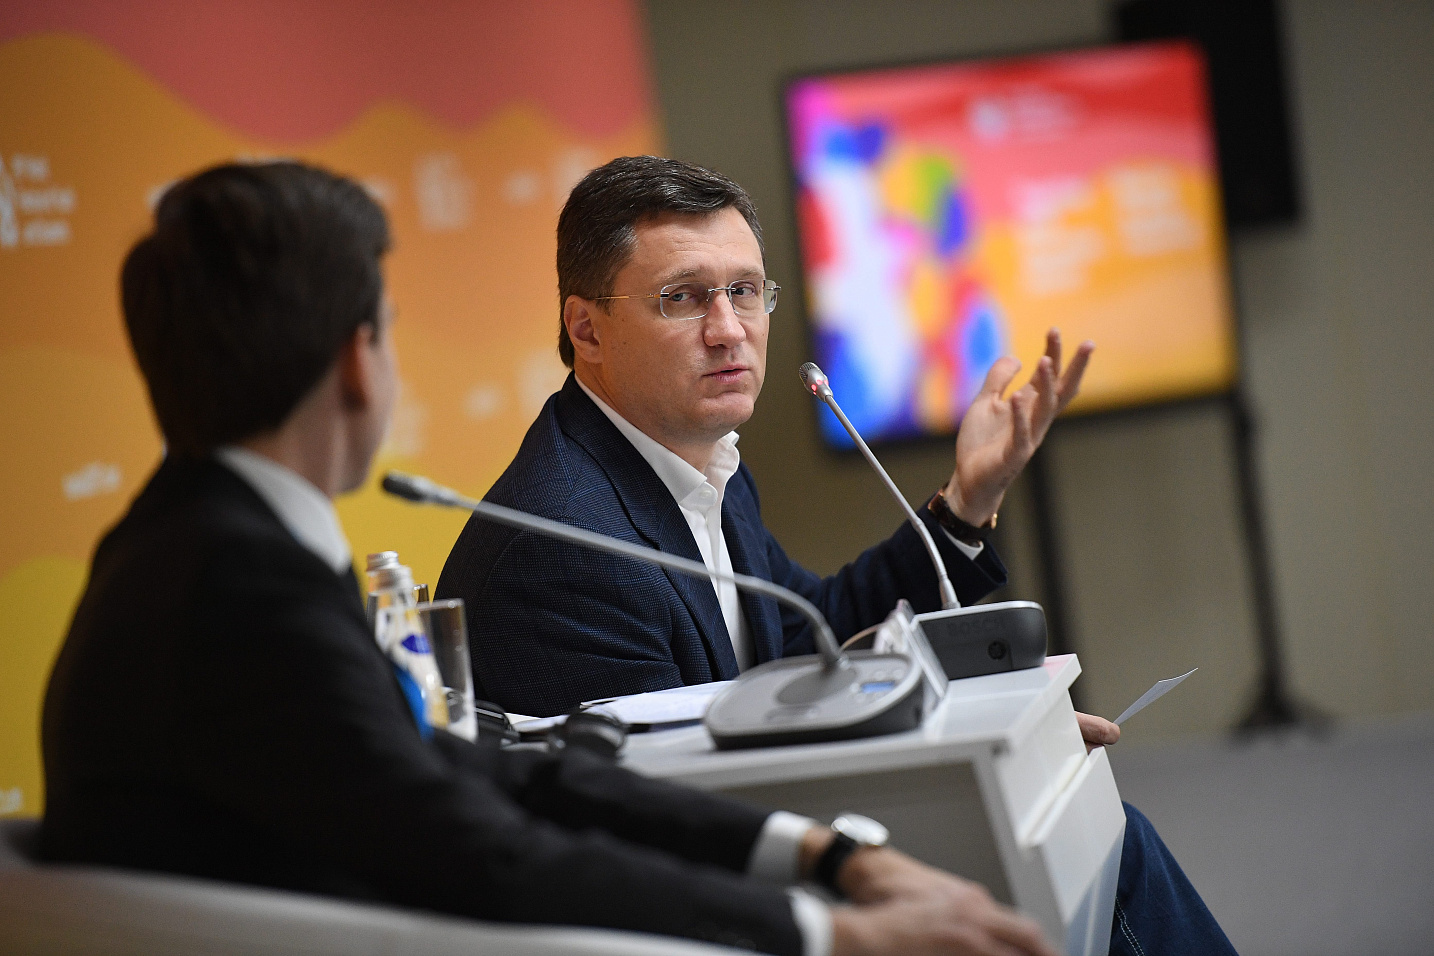 Мечты сбываются: министр энергетики Александр Новак пообещал помочь с реализацией идей участникам ВФМС 2017